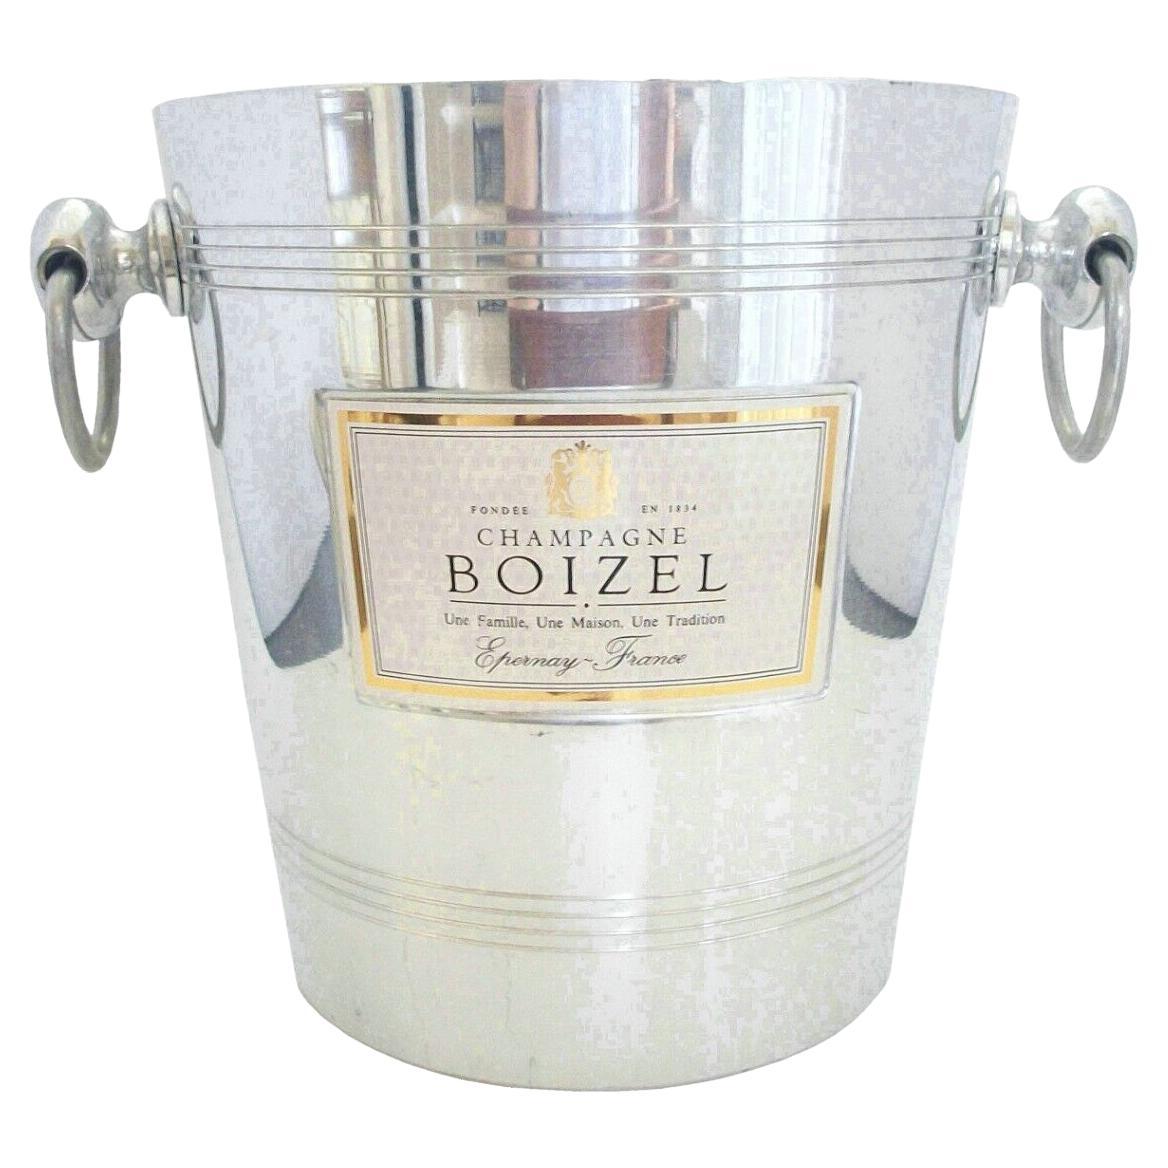 Argit Boizel Champagne - Polished Aluminum Ice Bucket, France, 20th Century